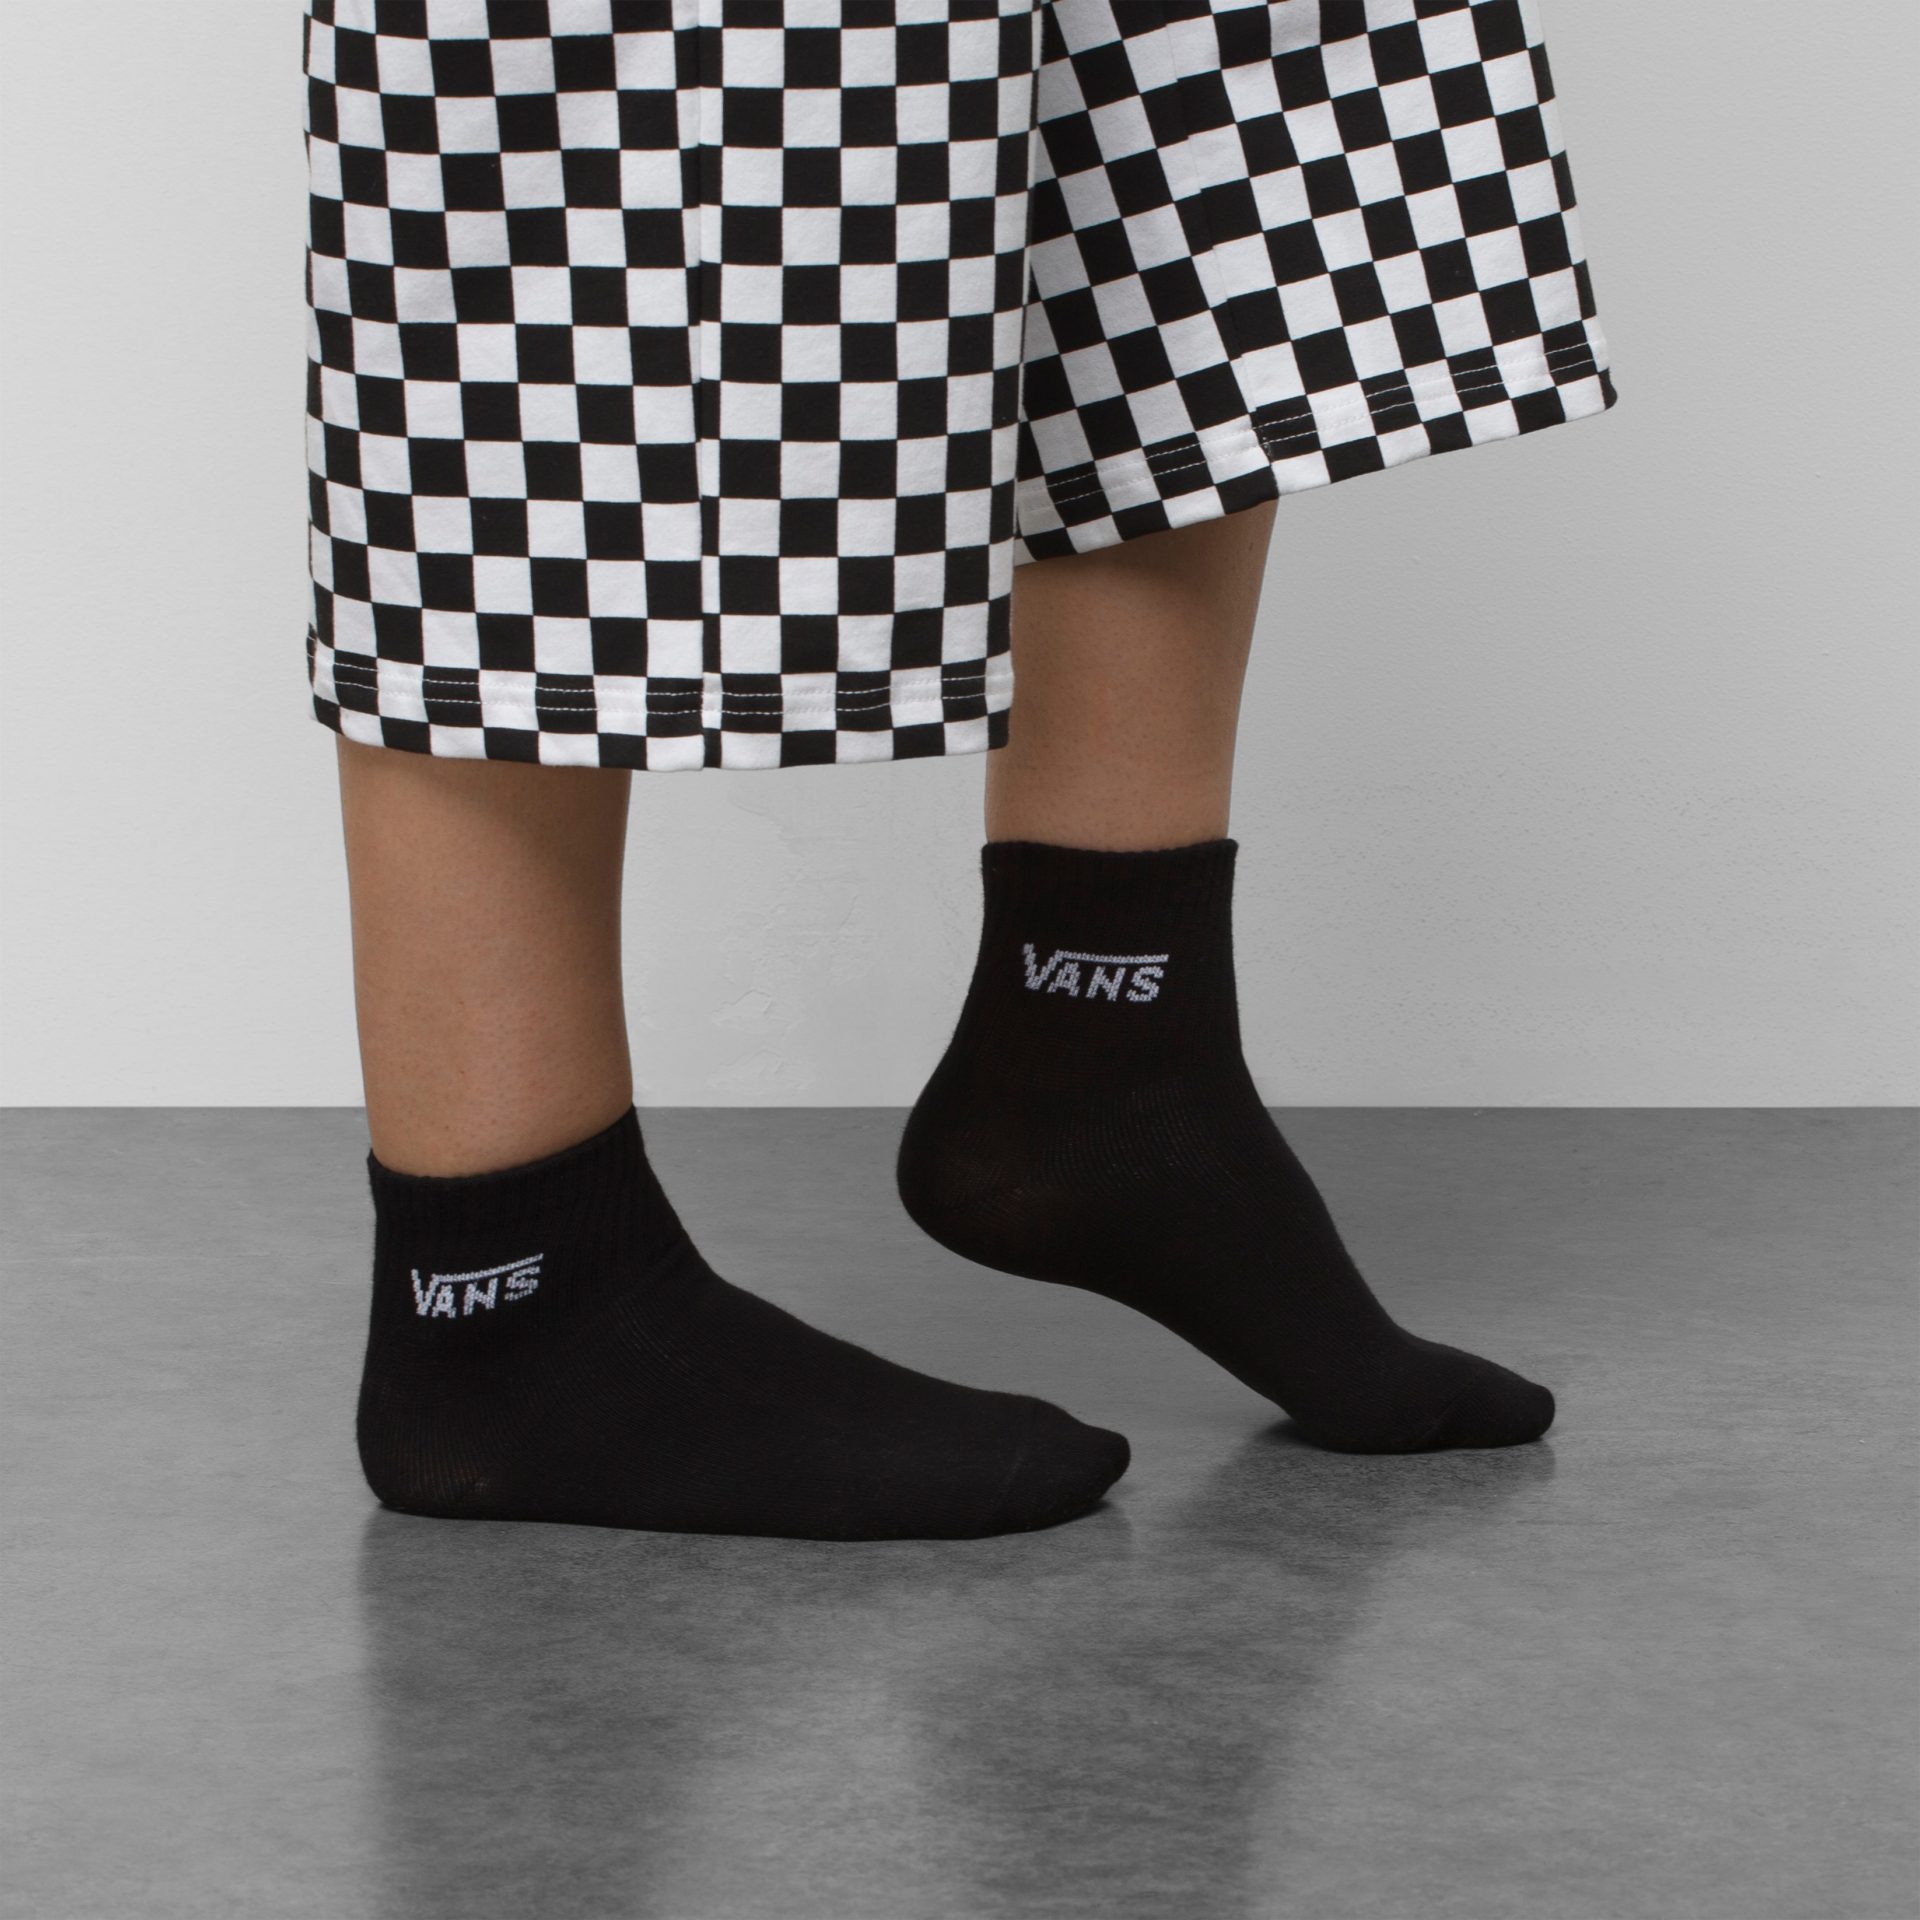 HALF Vans CREW SOCK Logoschriftzug Socken mit